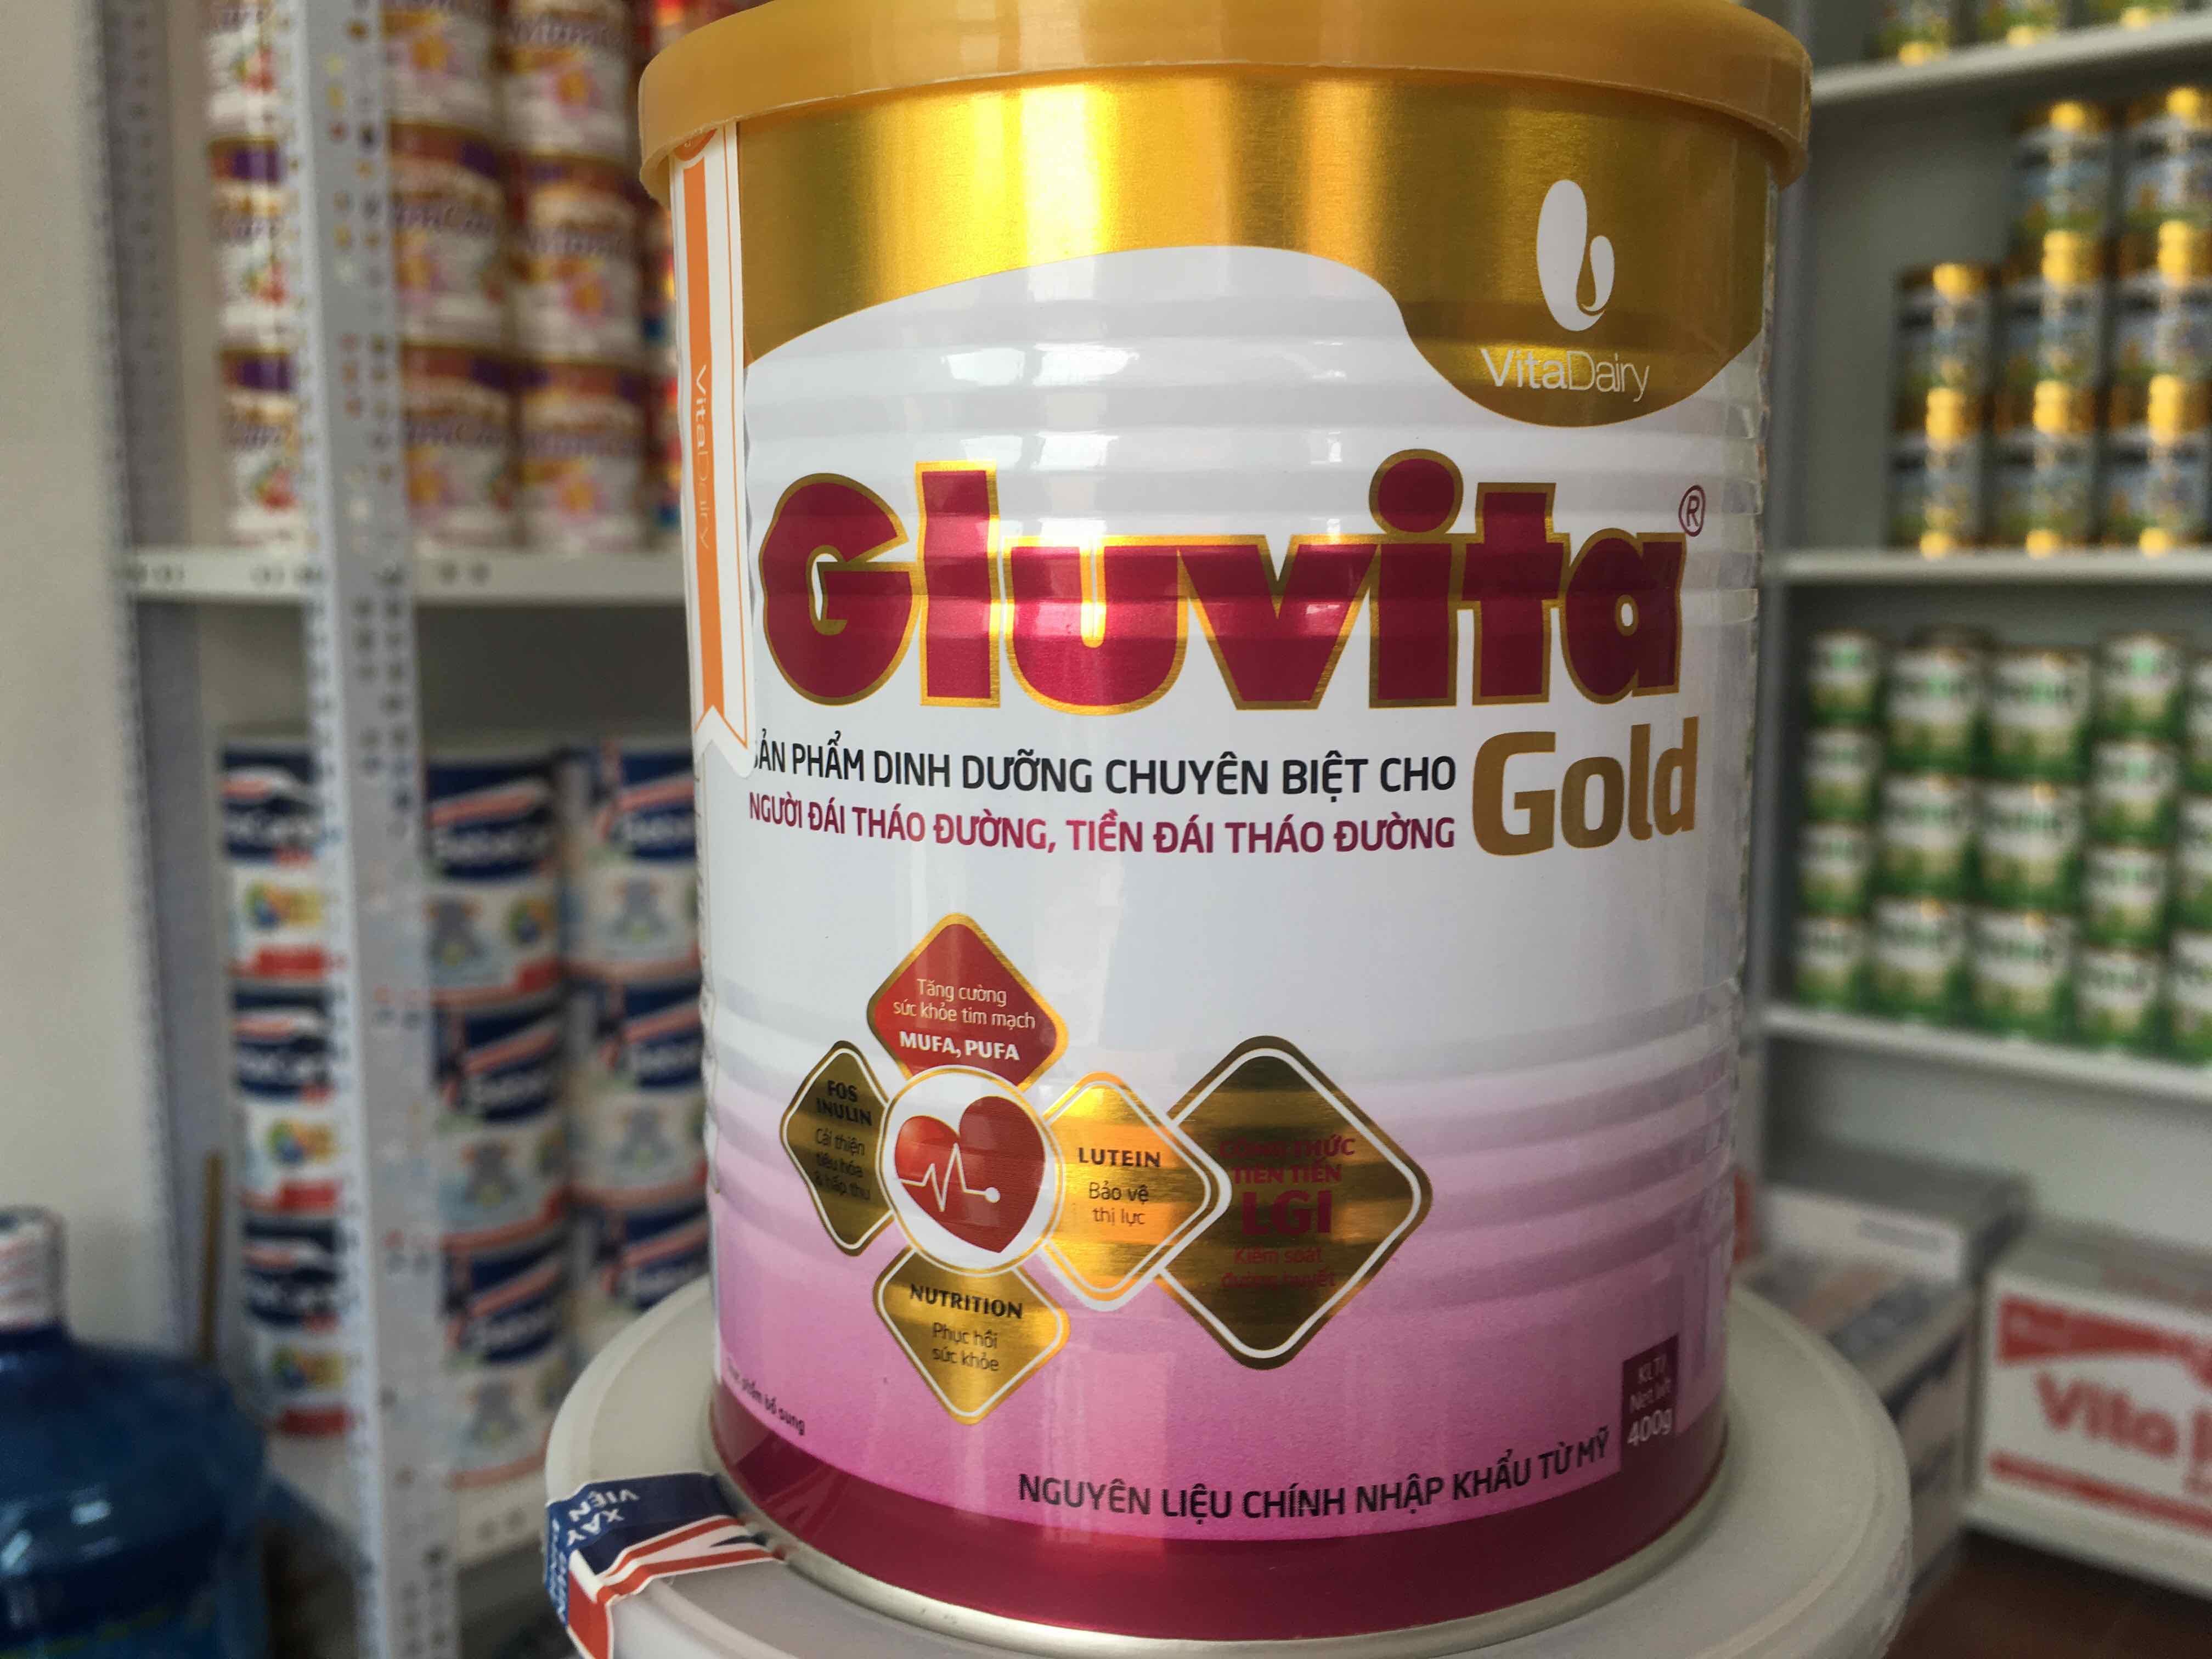 Sữa Gluvita Gold ảnh 3